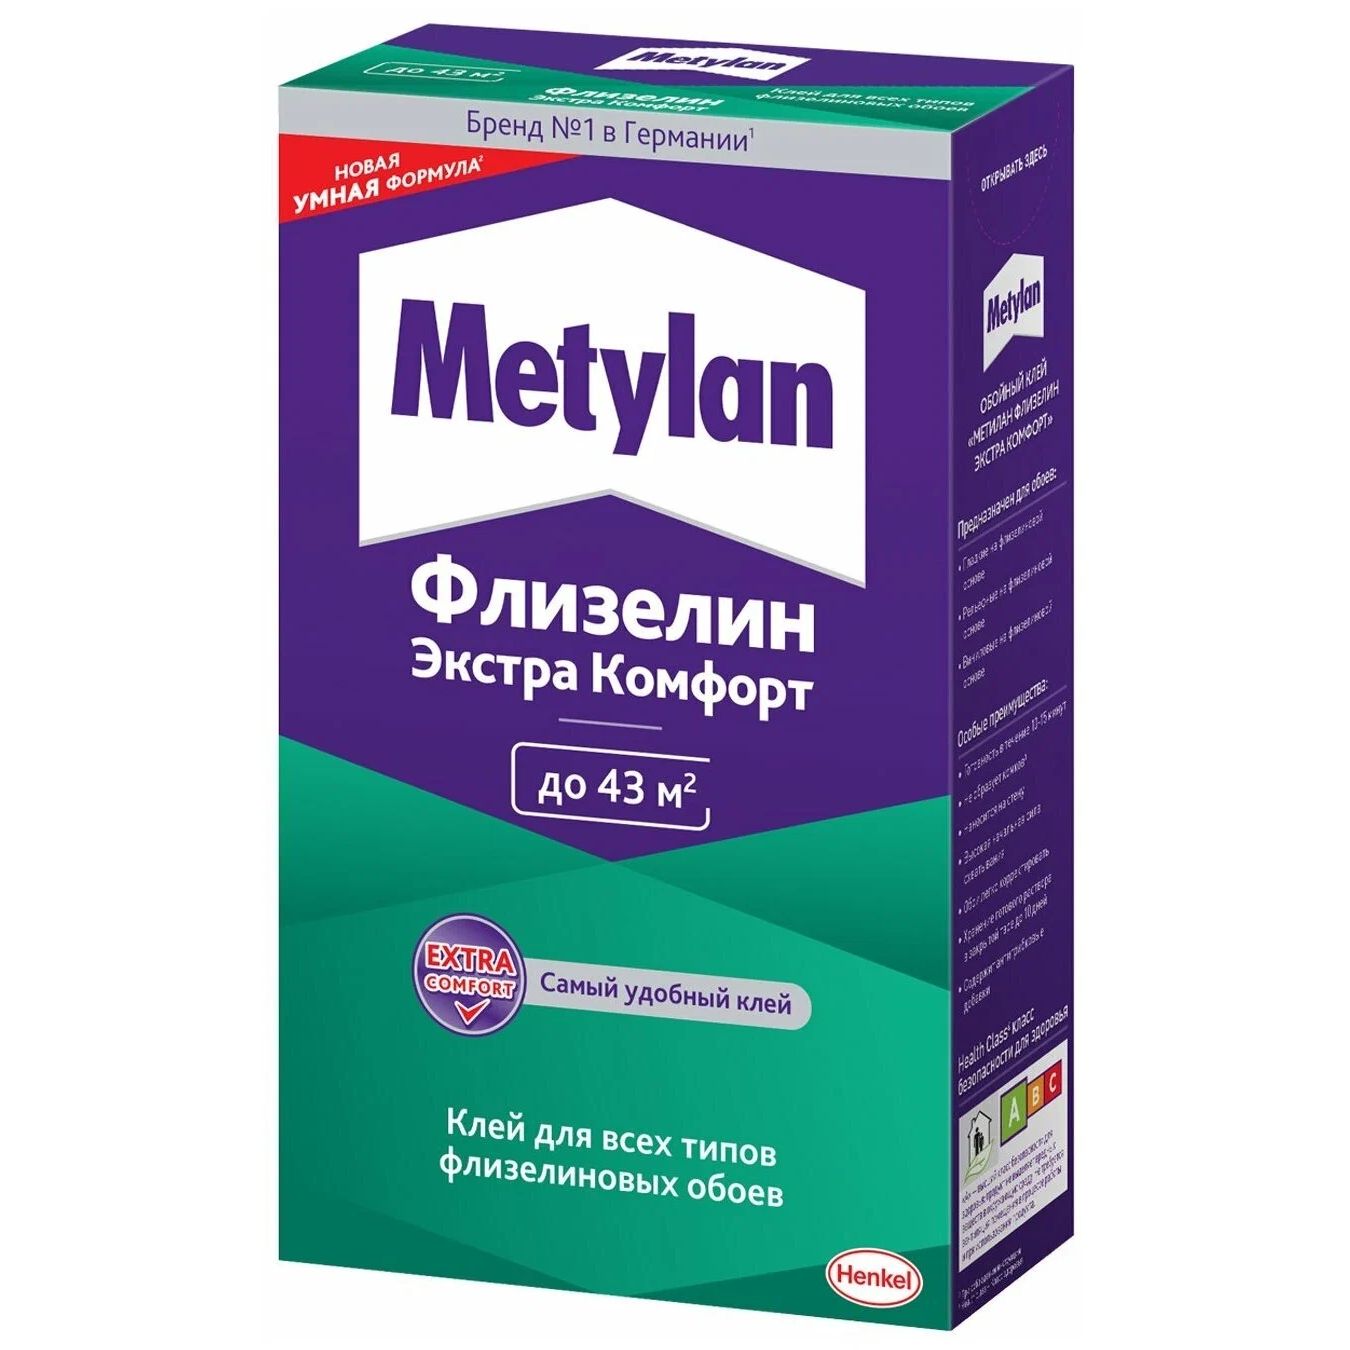 Клей Metylan Флизелин экстра комфорт для всех типов обоев, 300 г ночной oil крем для лица bisou восстанавливающий для всех типов кожи 50 мл